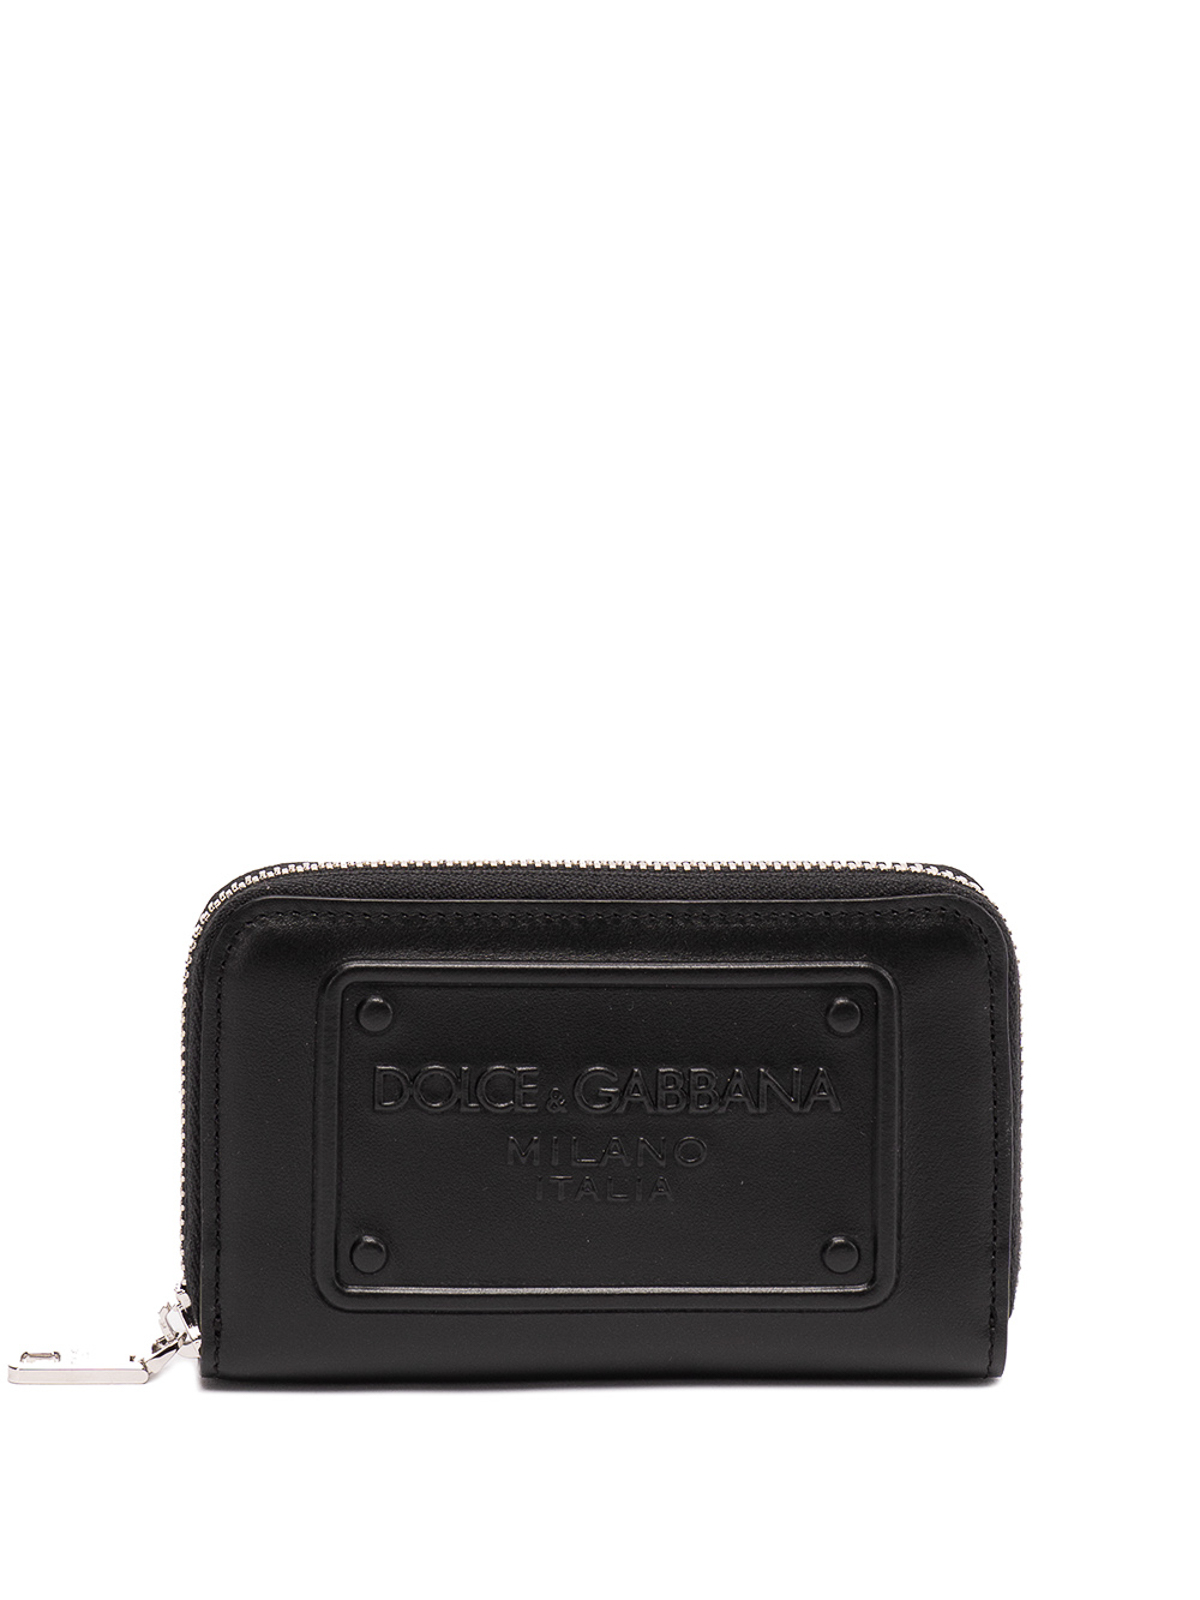 財布＆ポーチ Dolce & Gabbana - 財布 - 黒 - BP2522AG21880999